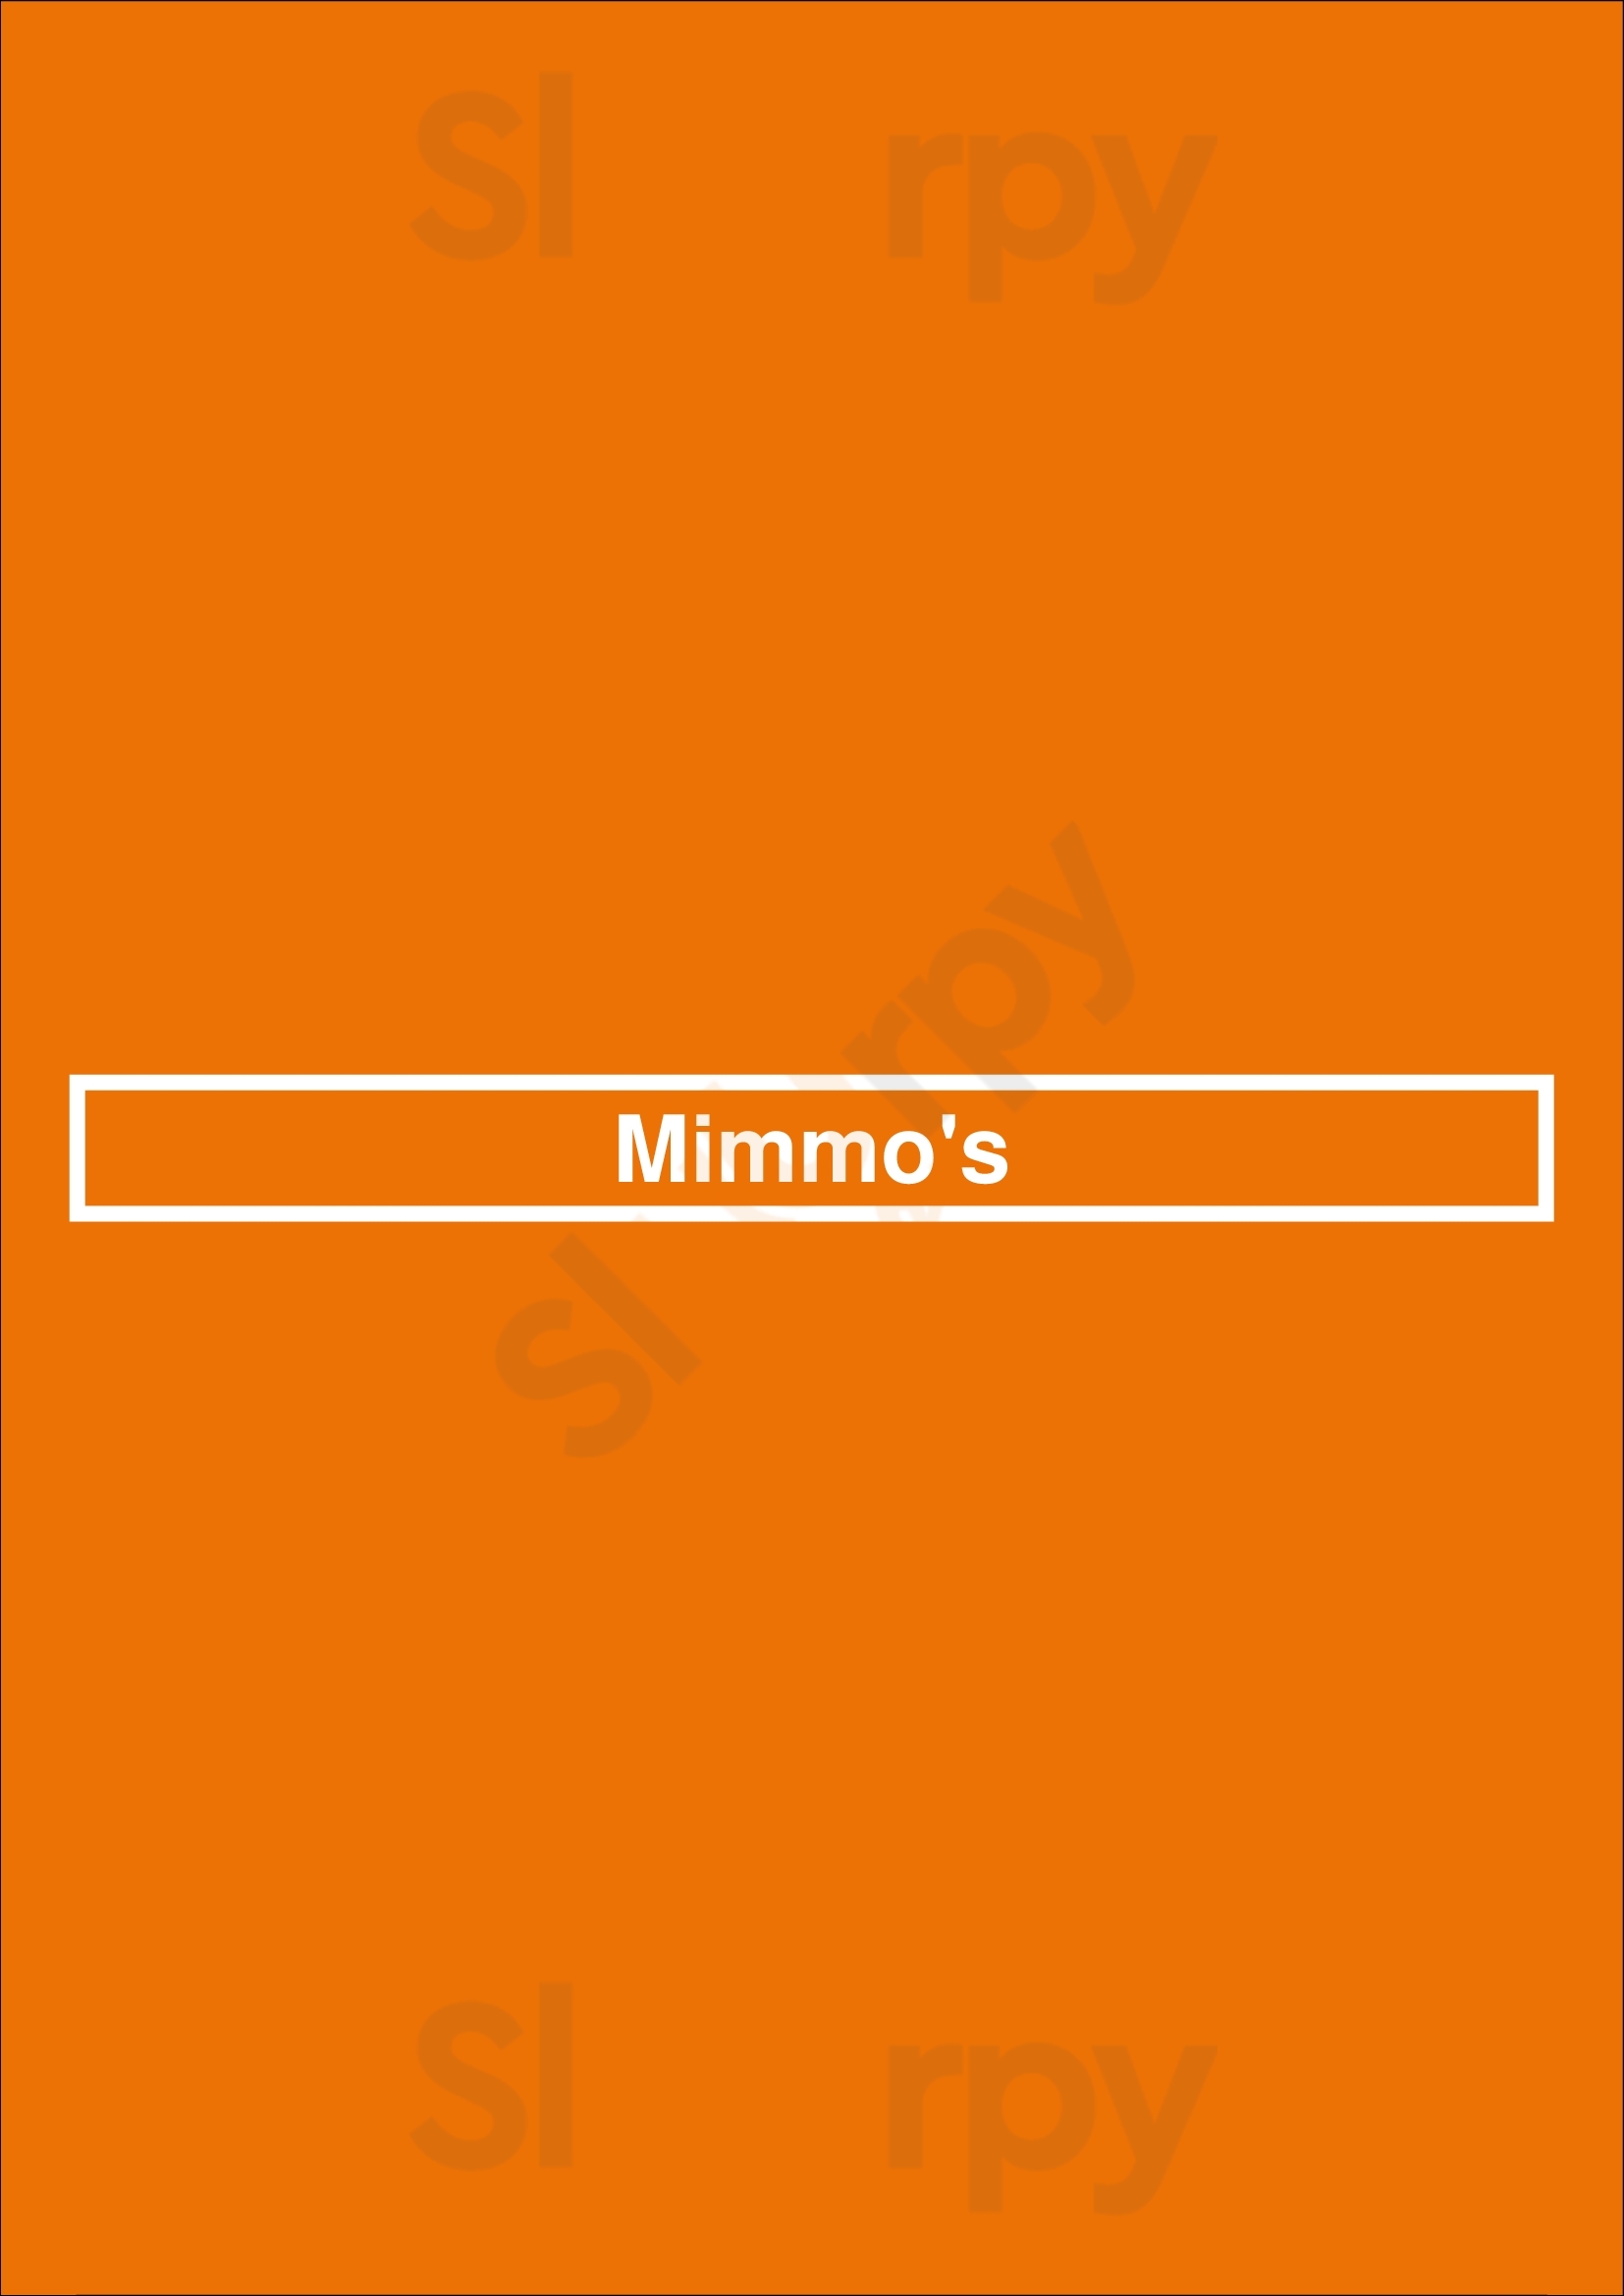 Mimmo's San Diego Menu - 1